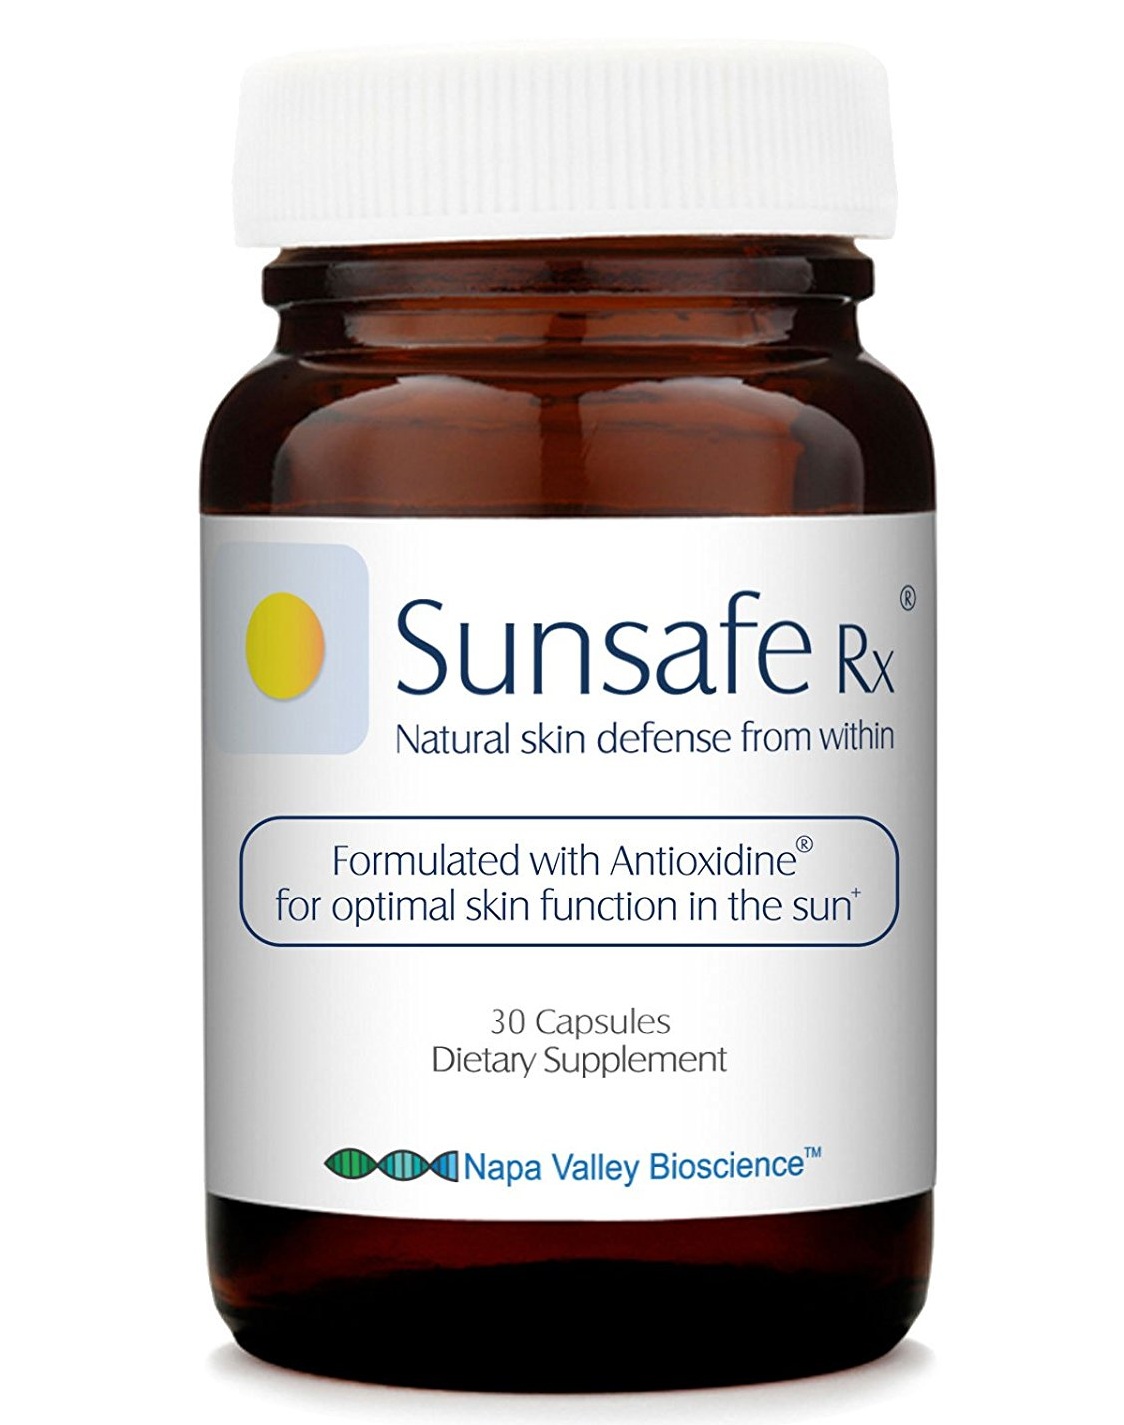 Viên uống chống nắng Sunsafe Rx với tác dụng kép bảo vệ da và mắt